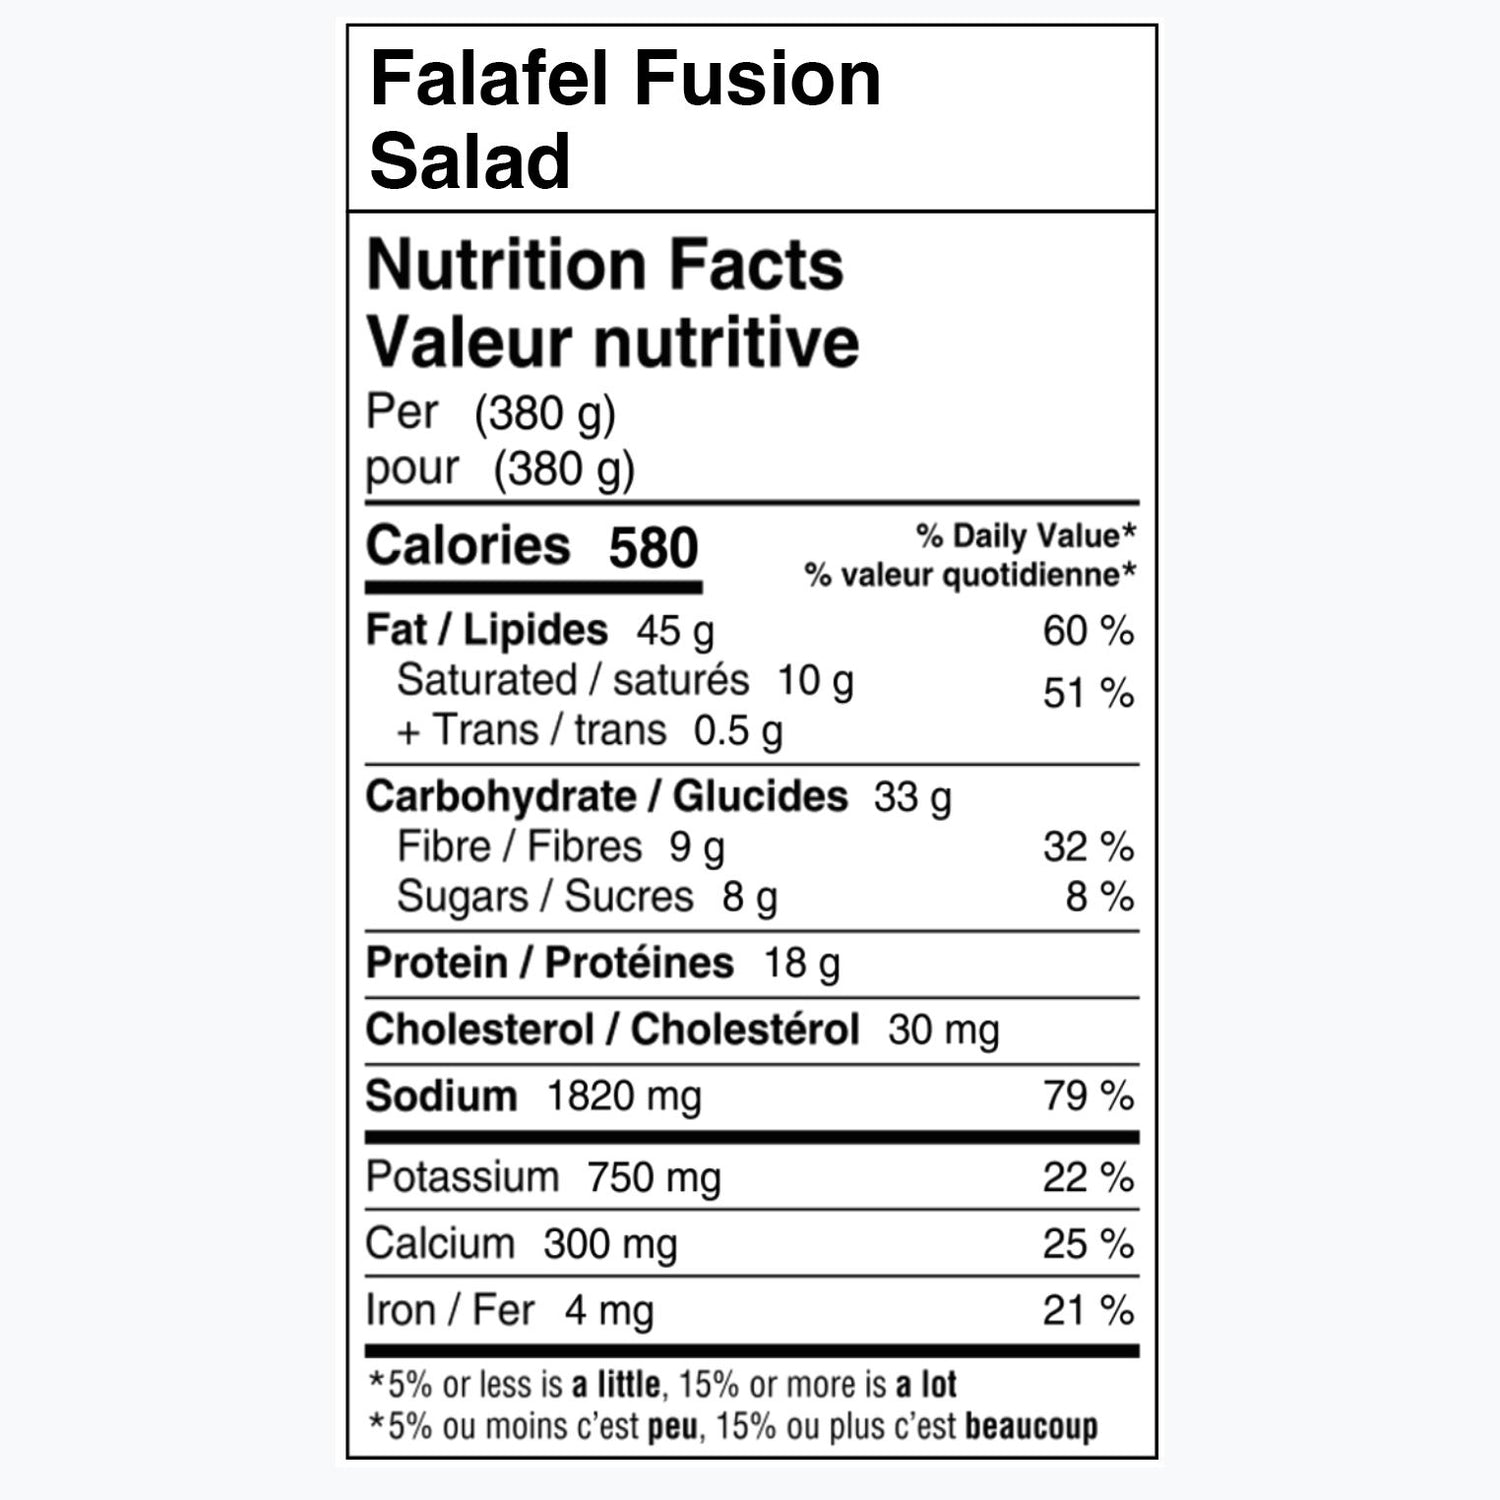 Falafel Fusion Salad